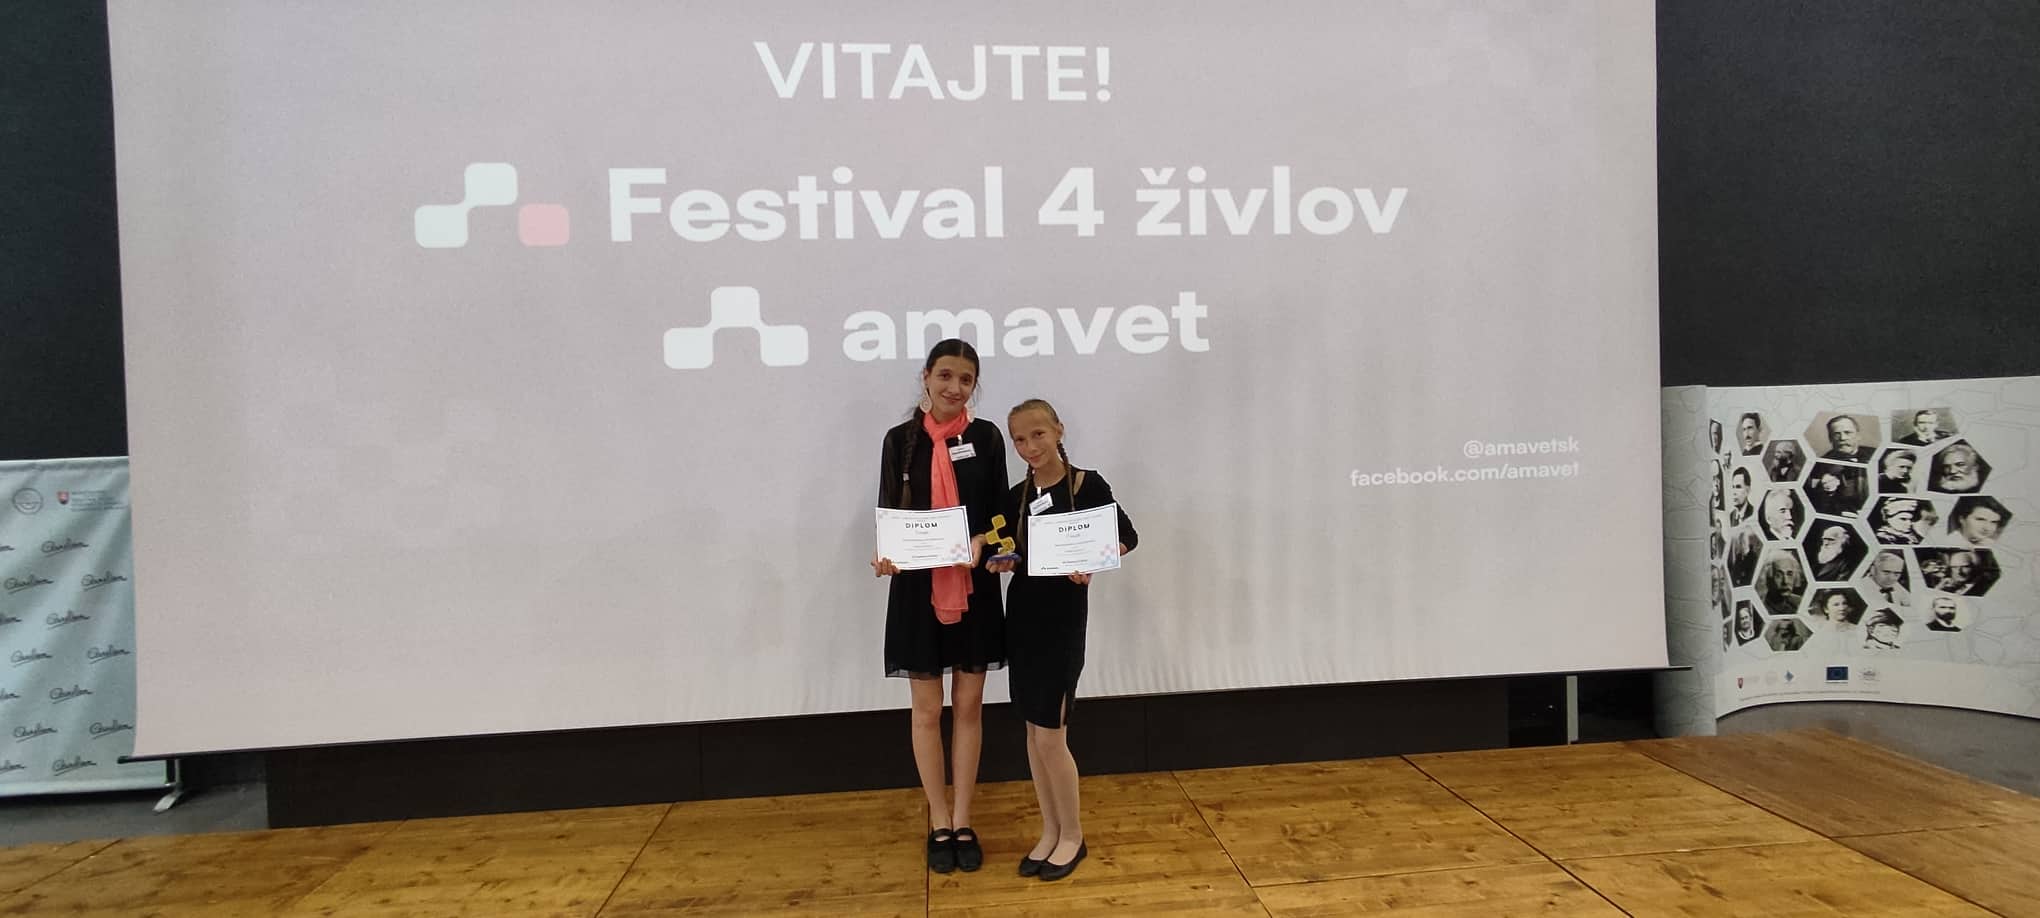 Amavet- Festival 4 živlov